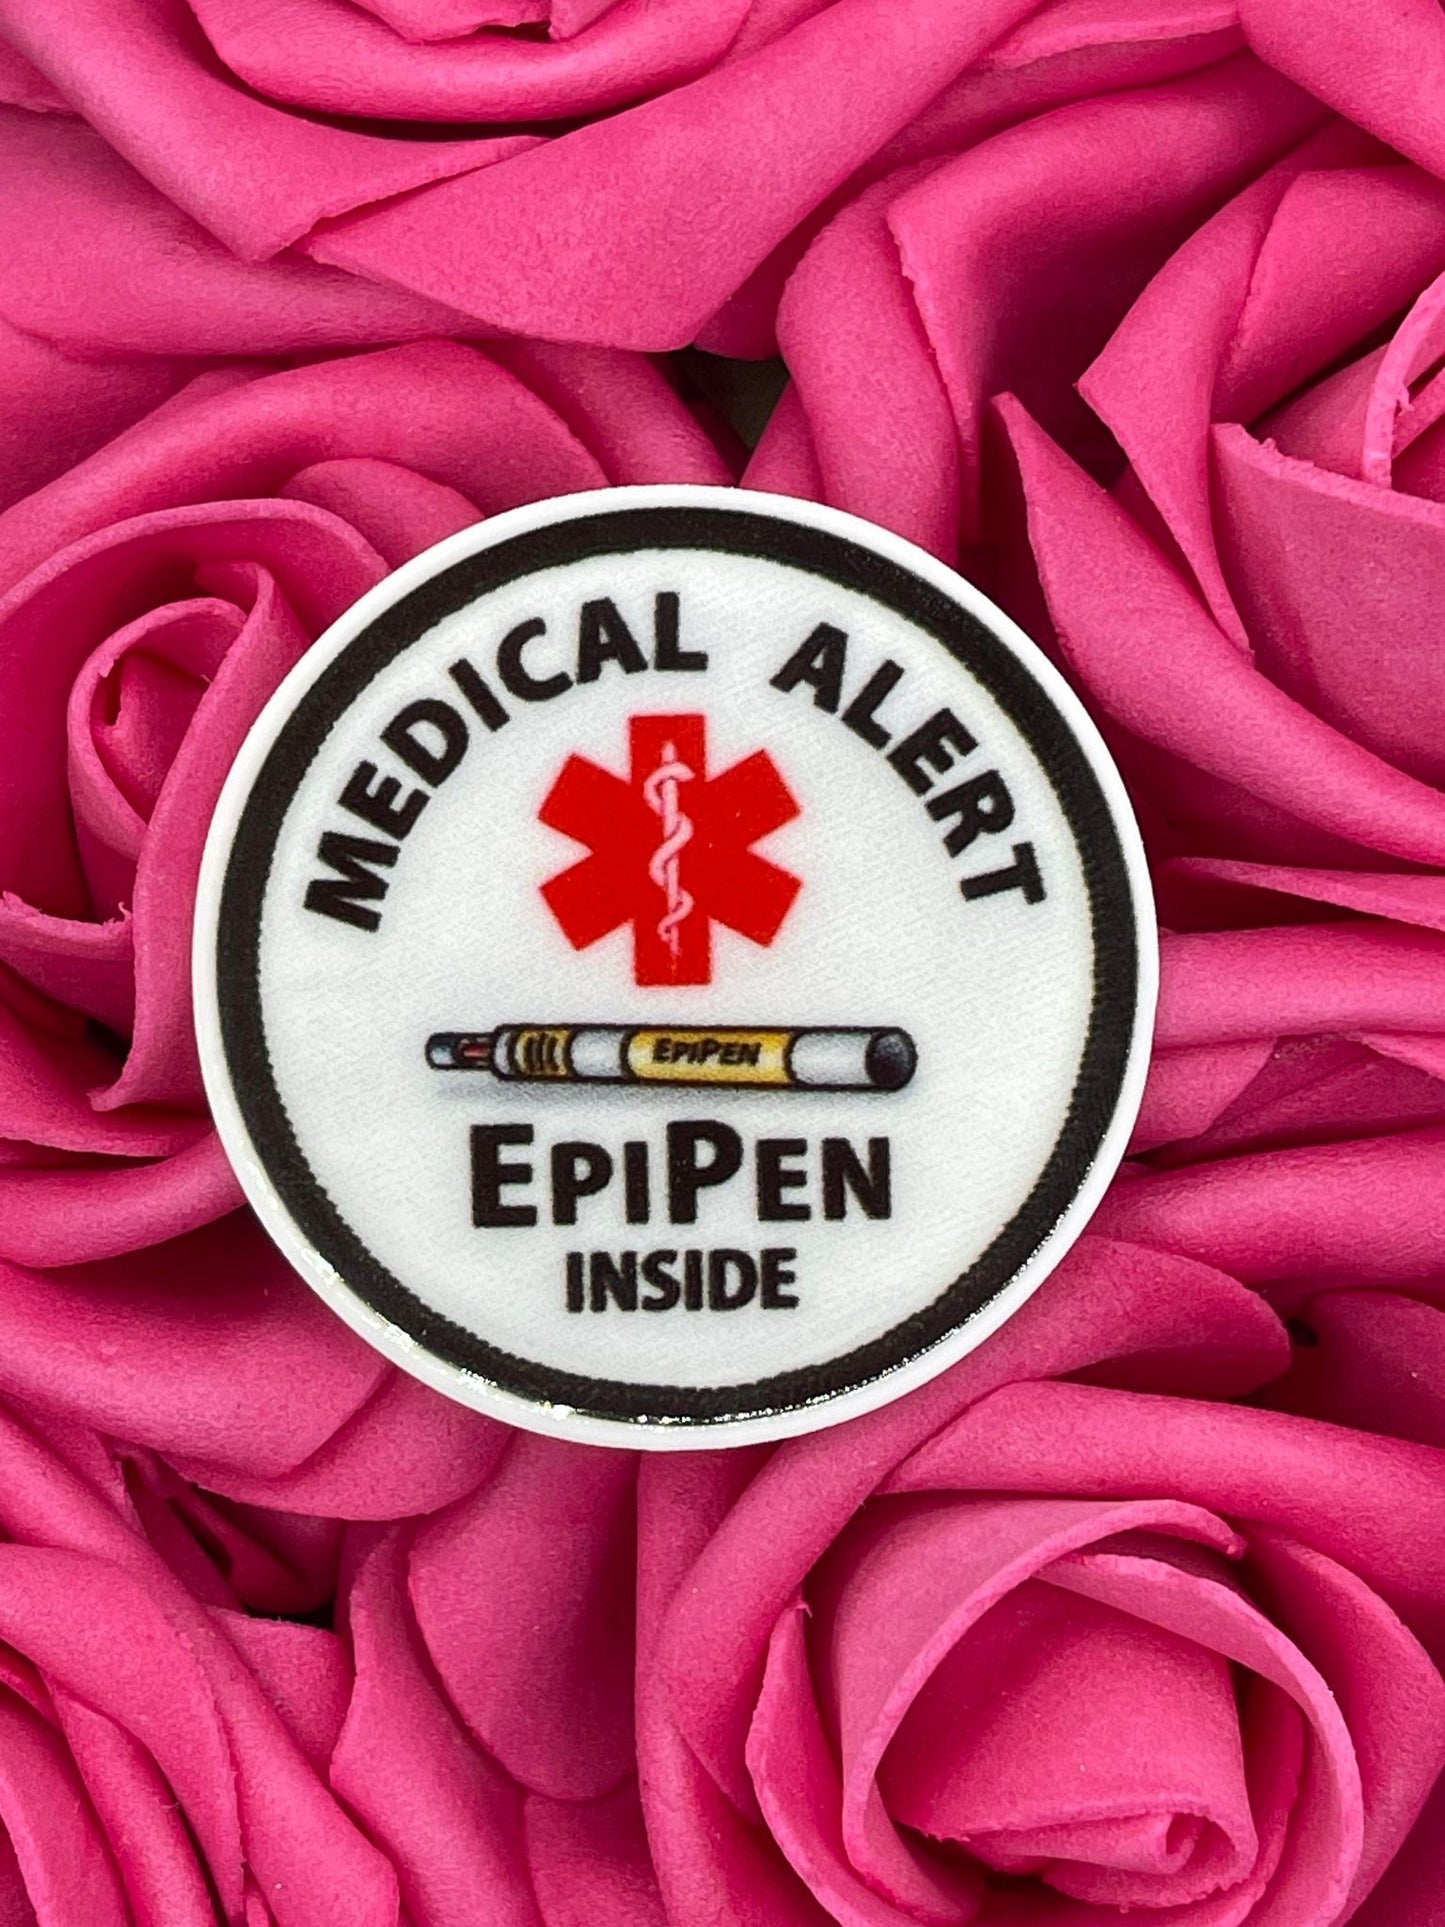 #824 Medical Alert: EpiPen